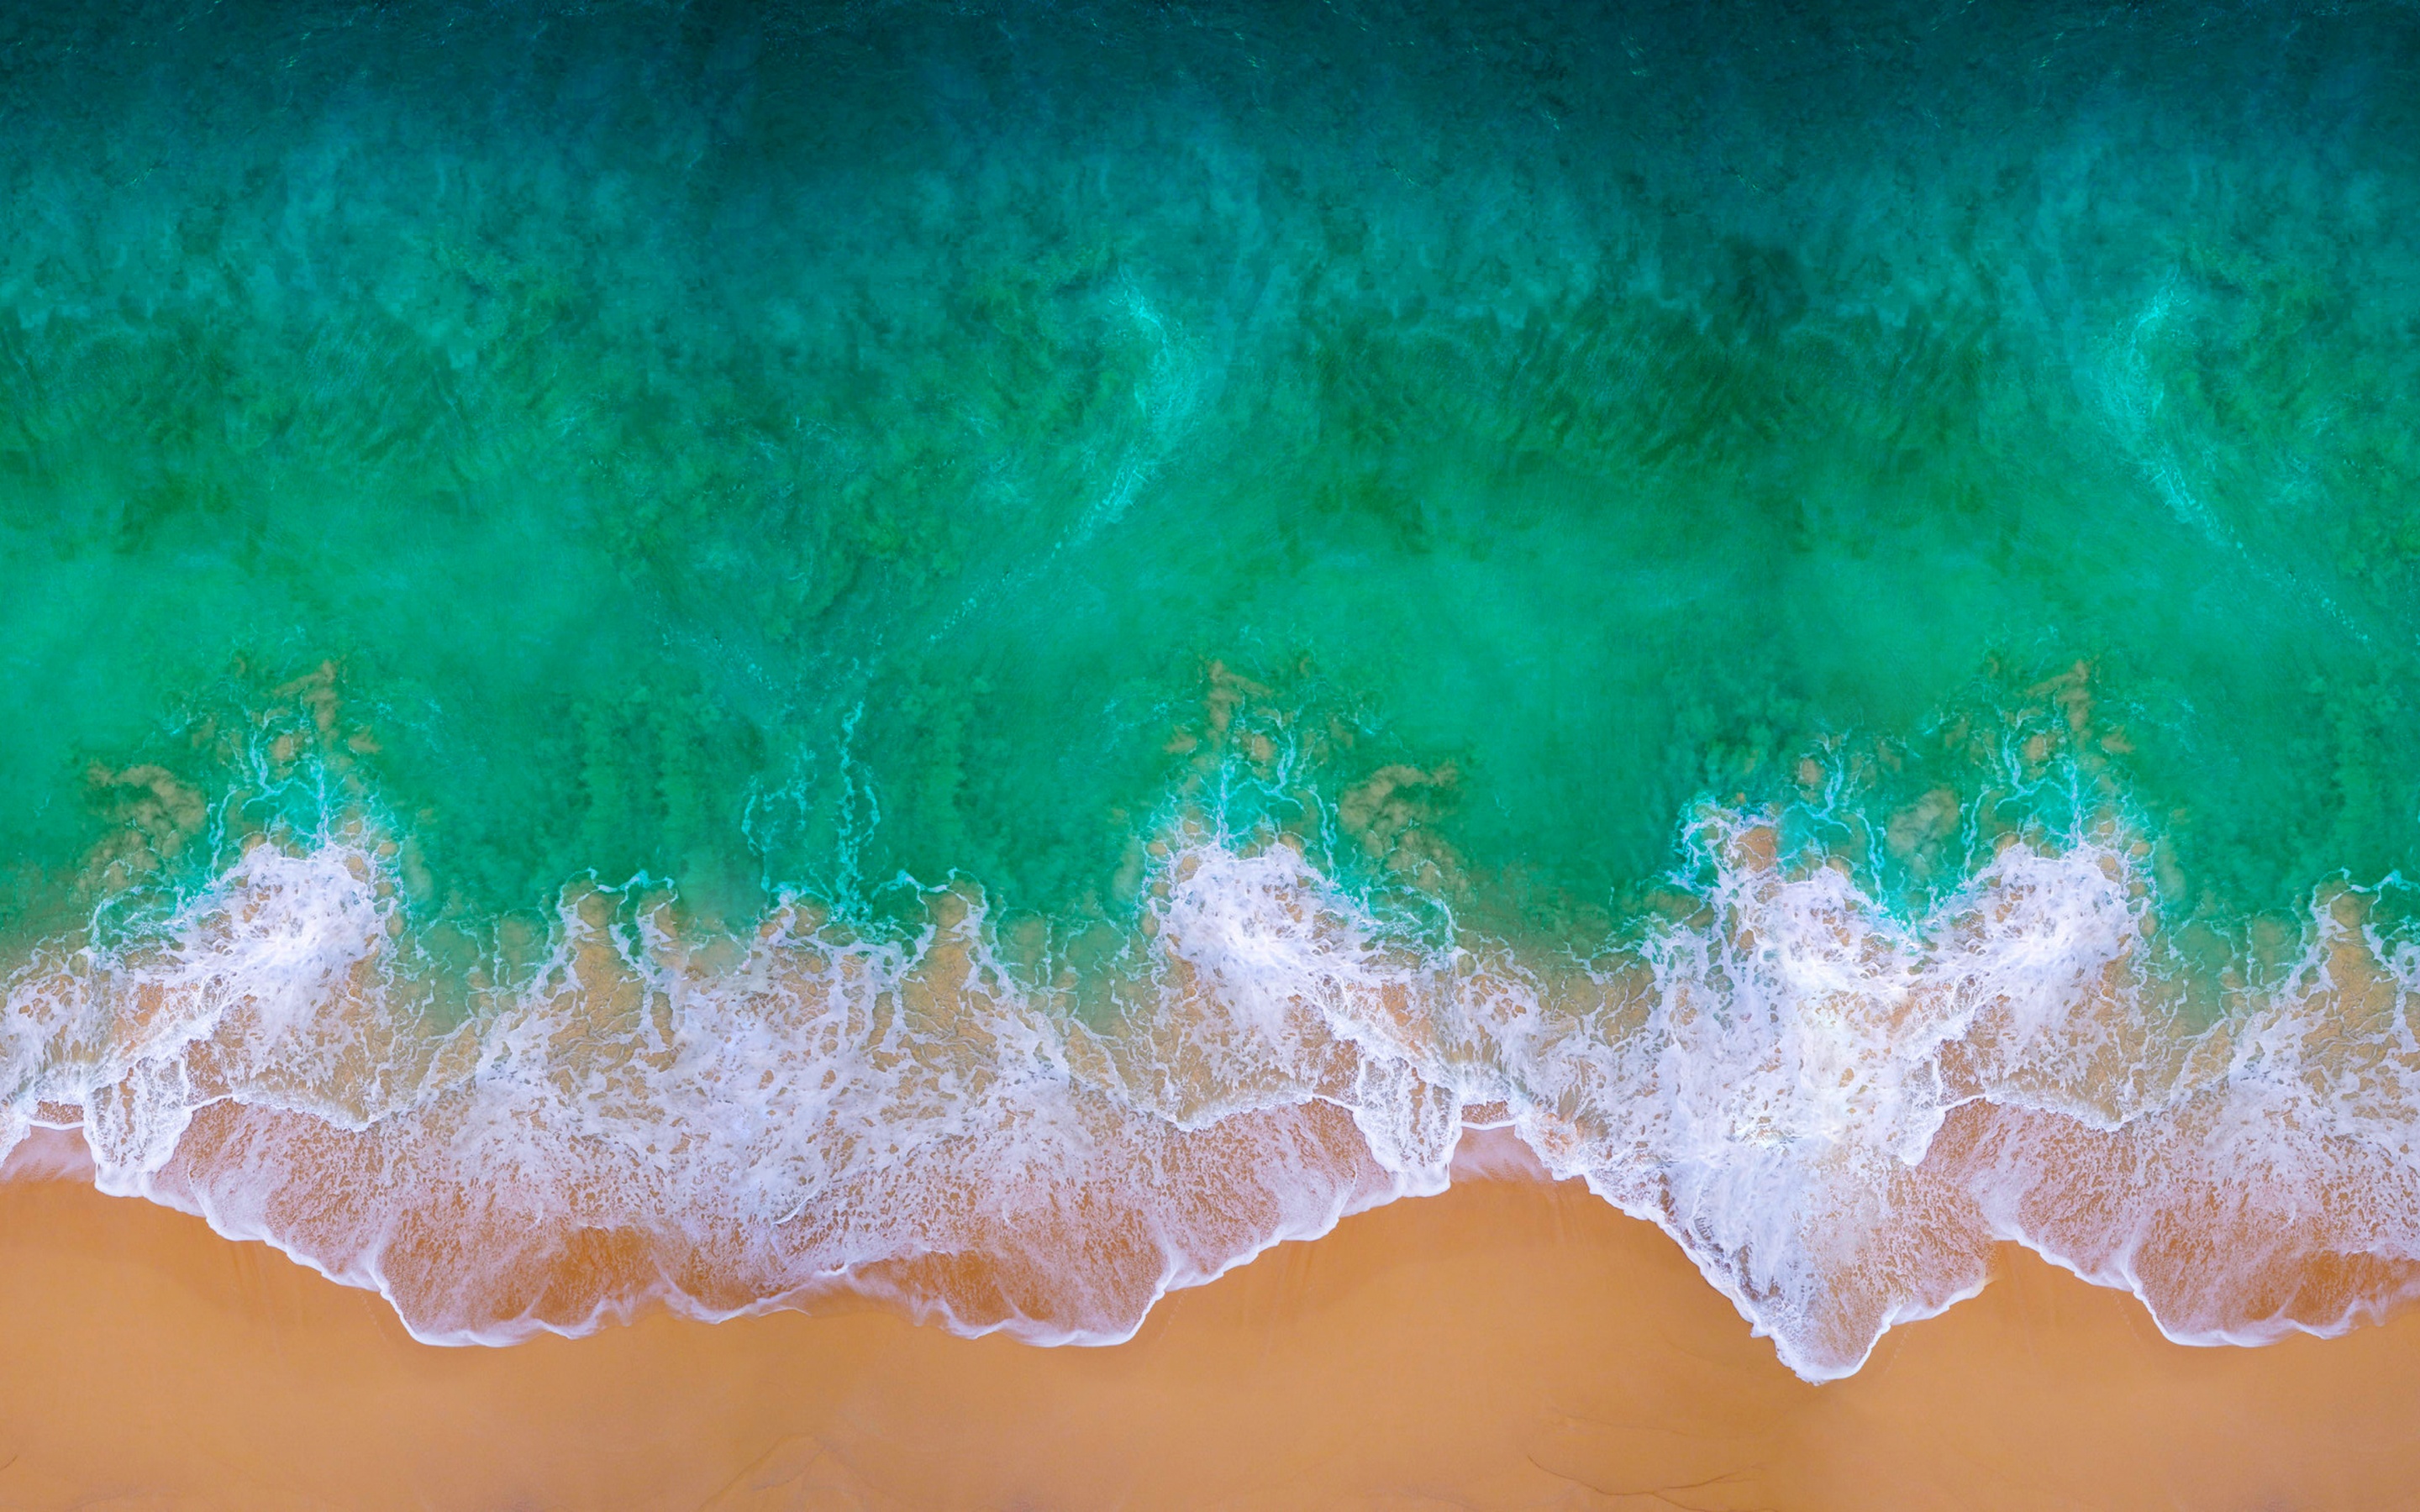 Hình nền bãi biển 4K với đường nét mềm mại, chân thực và sắc nét sẽ đem đến một trải nghiệm thú vị và sảng khoái cho người dùng. Cảm giác như đang đứng trước bãi biển đầy mơ mộng, cát trắng và nước xanh như lam.